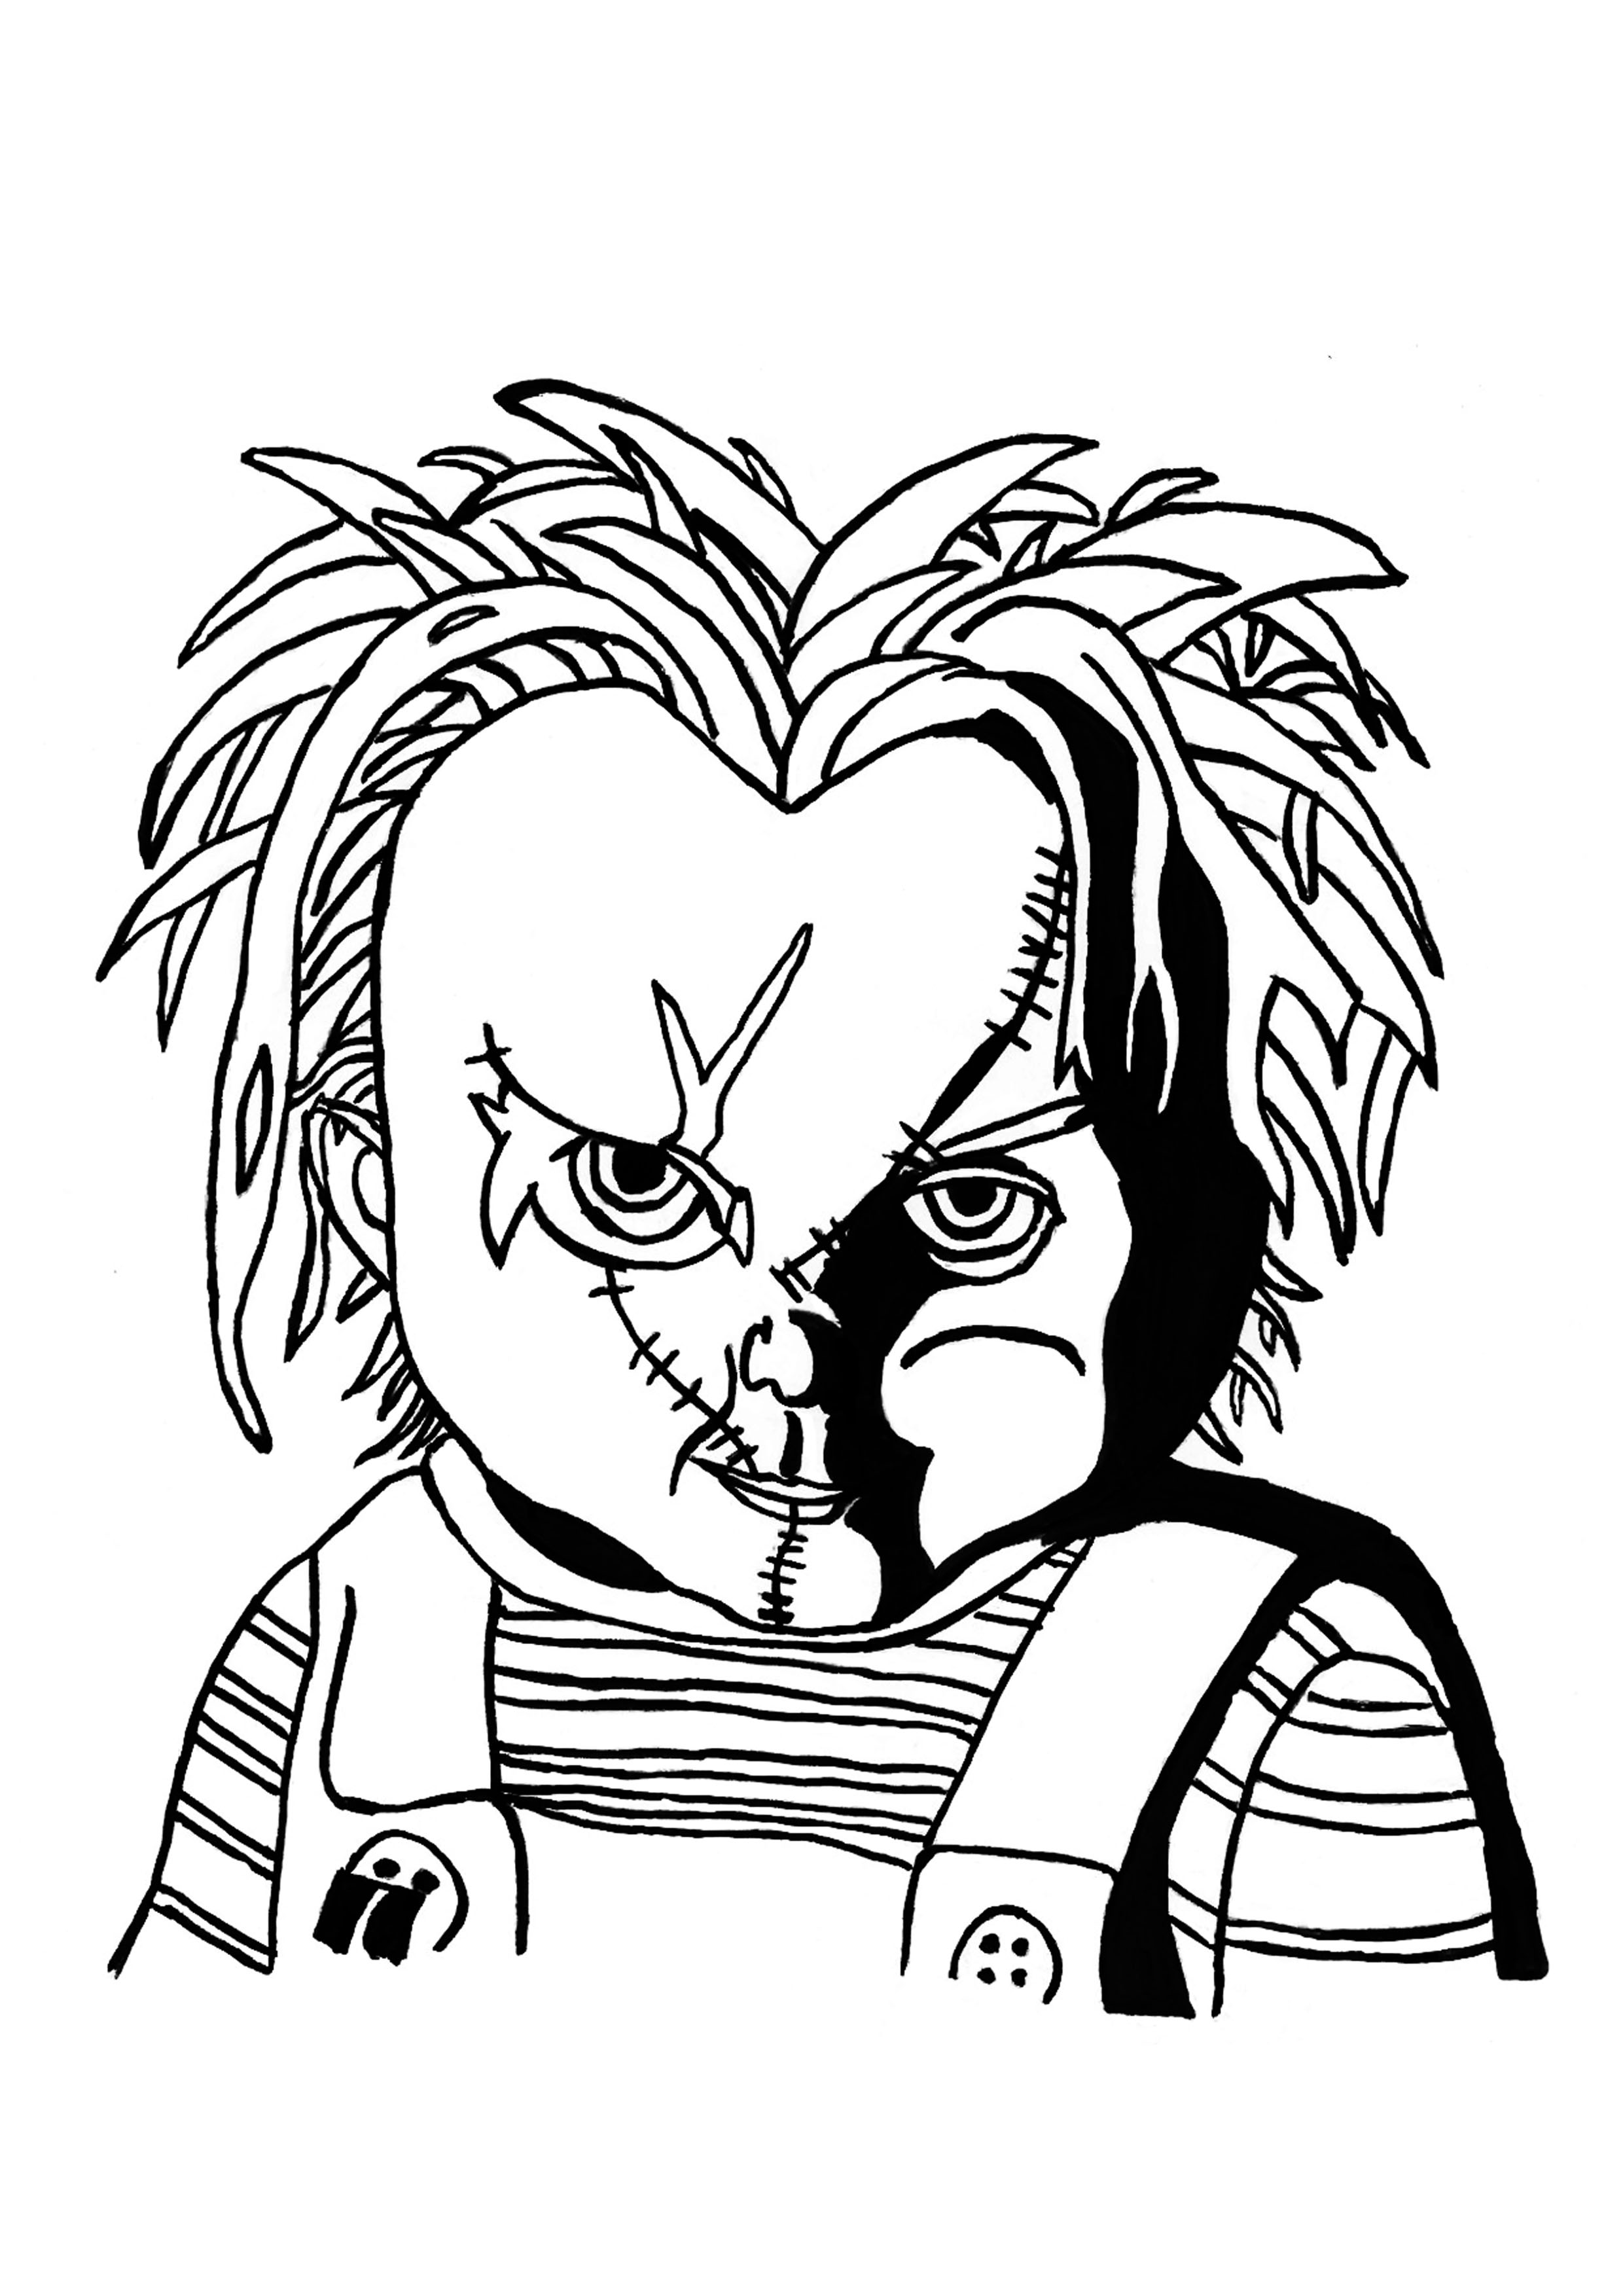 Wütender Chucky von Chucky